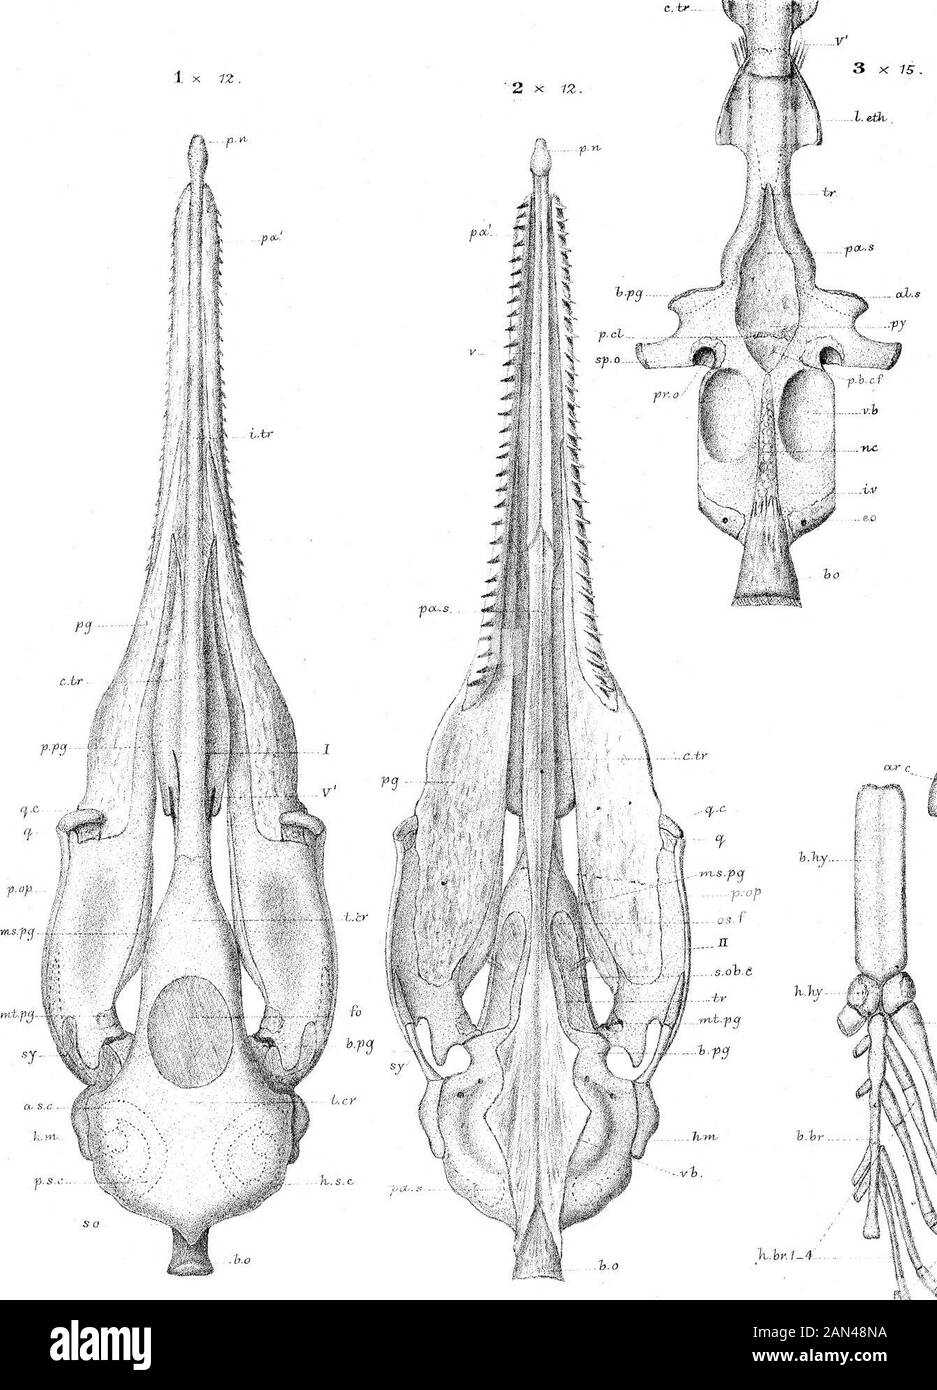 Sullo sviluppo del cranio in Lepidaosteus osseo . h&gt;,fa b.br J^ourher. JPhil. Trasm. 1&lt; v.tr. Yns.-fcj i„ b*ns.l882.i&gt; fine 34 x 15, limo- Foto Stock